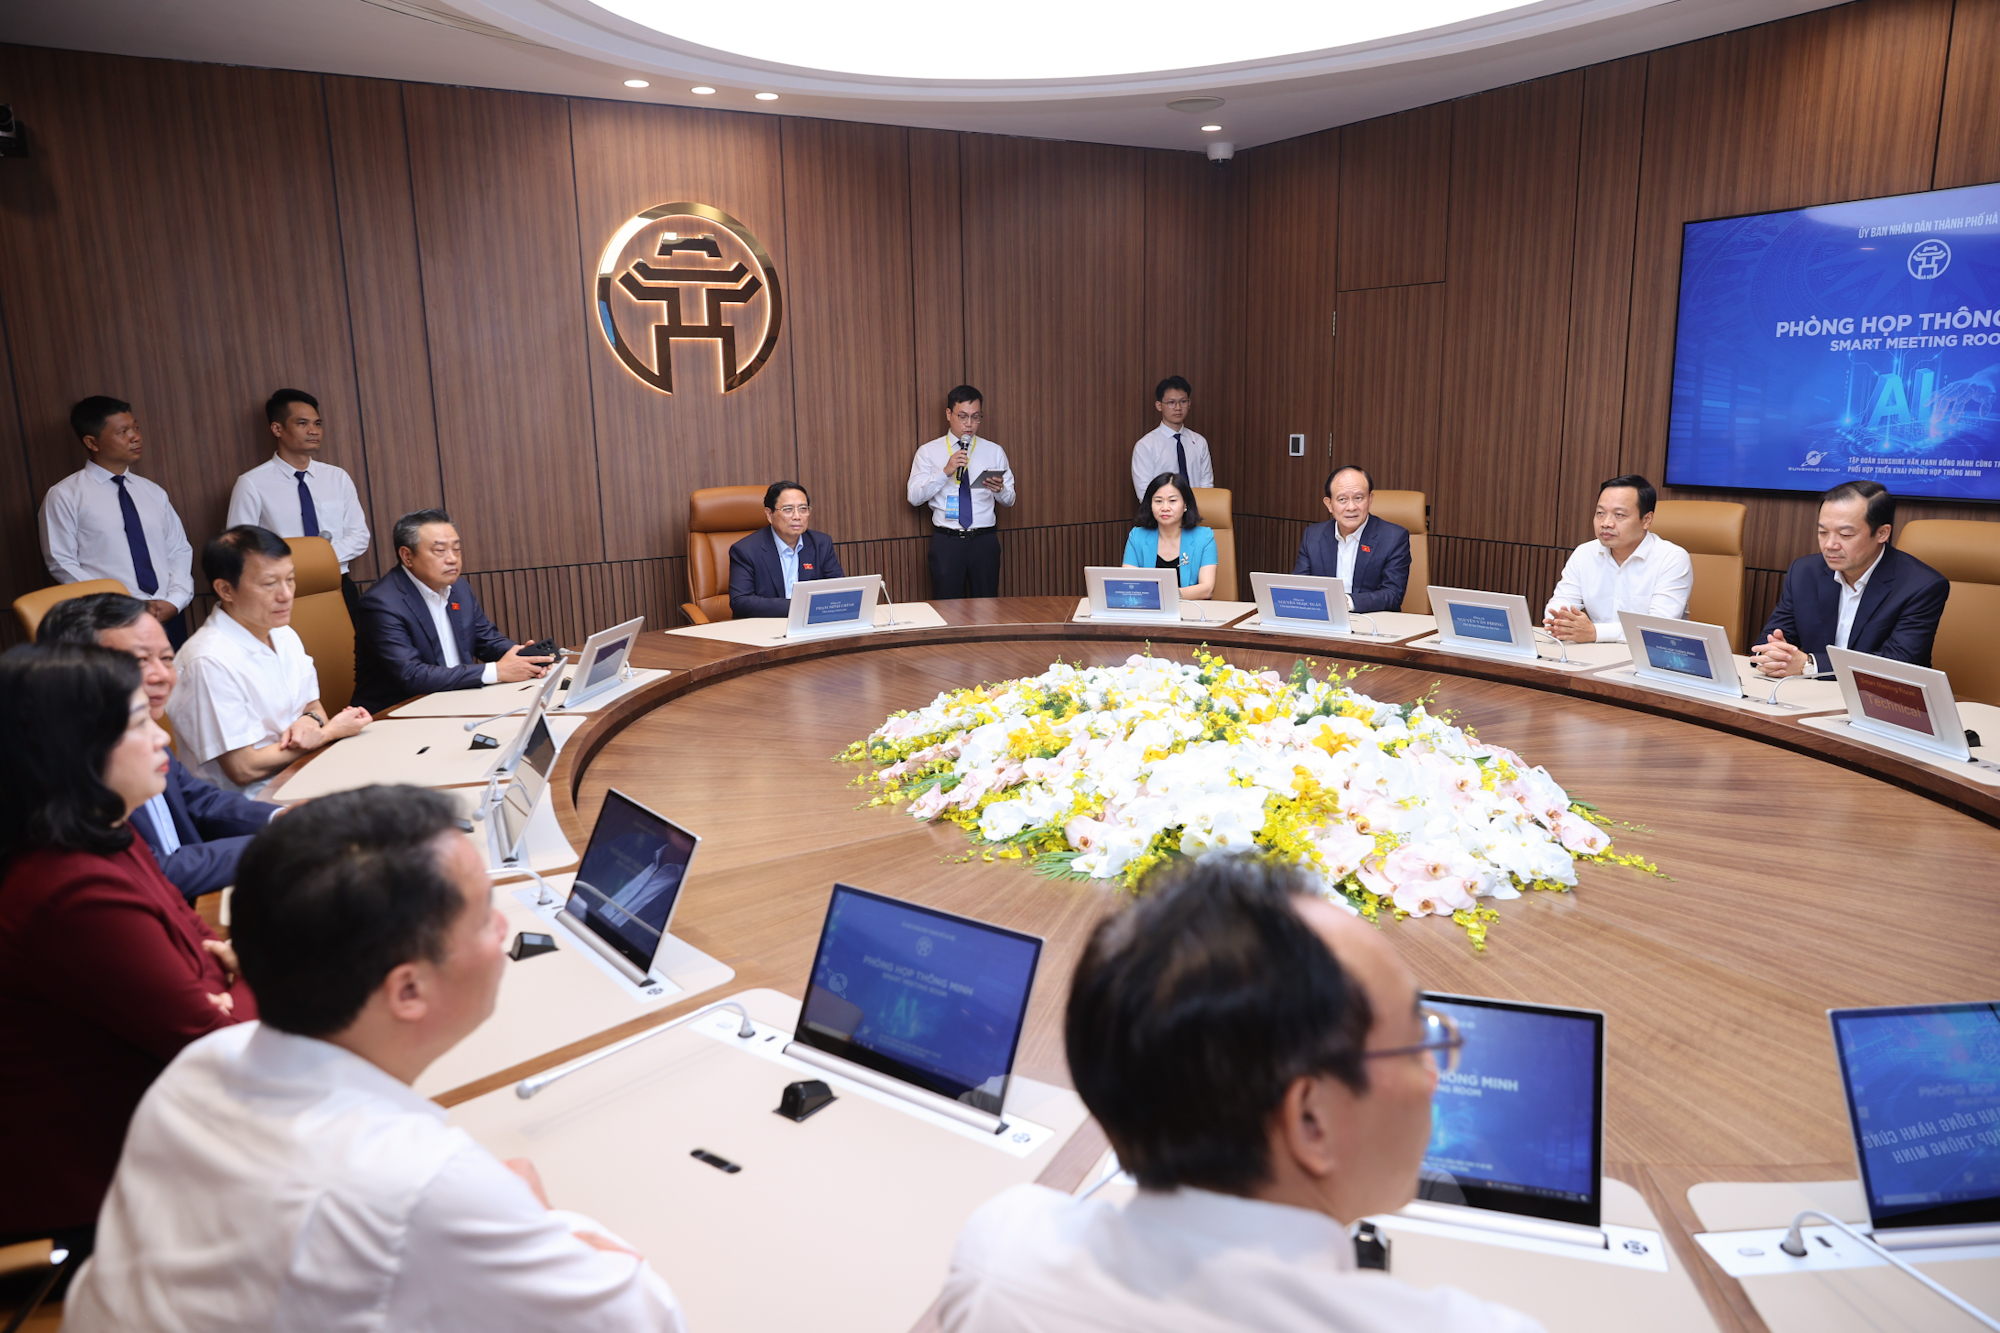 Thủ tướng Phạm Minh Chính và các đại biểu trải nghiệm các ứng dụng phòng họp thông minh của TP. Hà Nội - Ảnh: VGP/Nhật Bắc